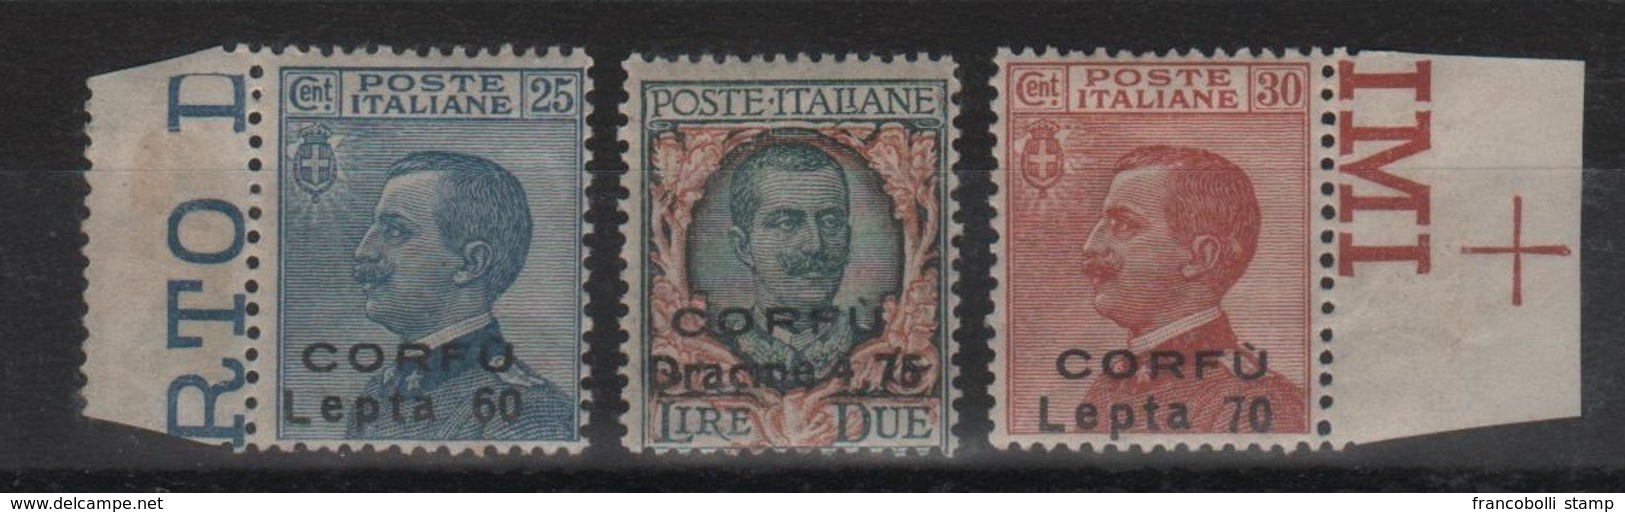 1923 Occupazione Corfù Francobolli D'Italia Sopr. CORFU Serie Cpl MNH Non Emessi - Corfou